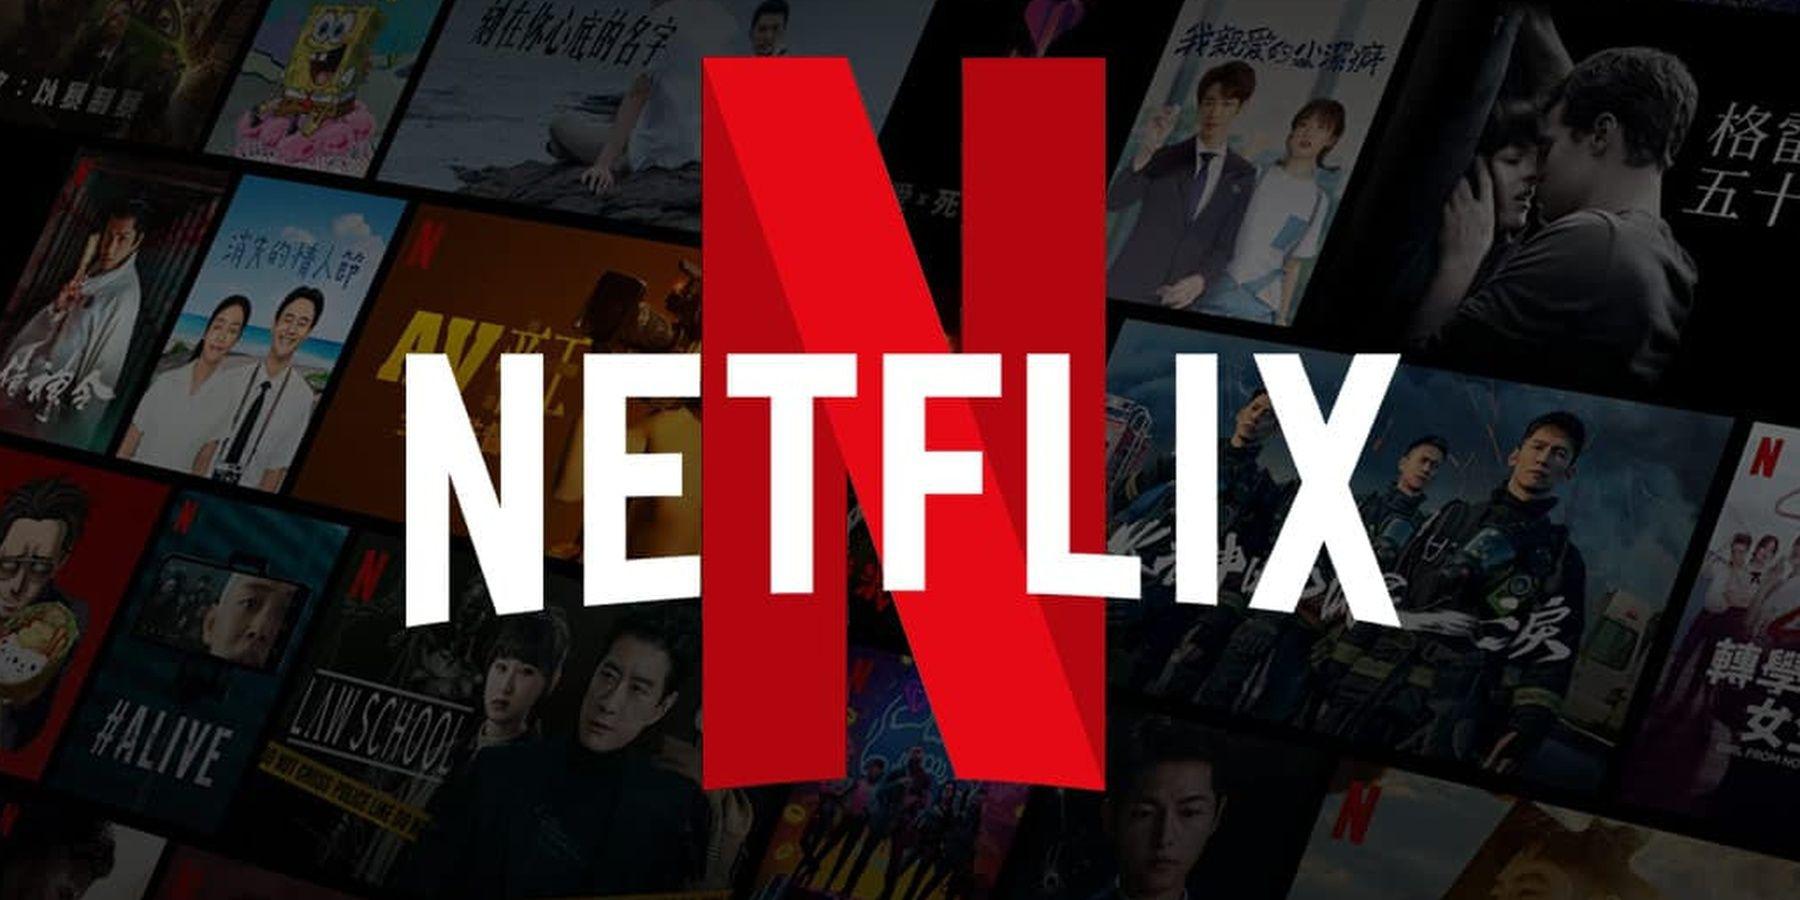 As medidas de compartilhamento anti-senha da Netflix começam a tomar forma, aqui está o primeiro colapso